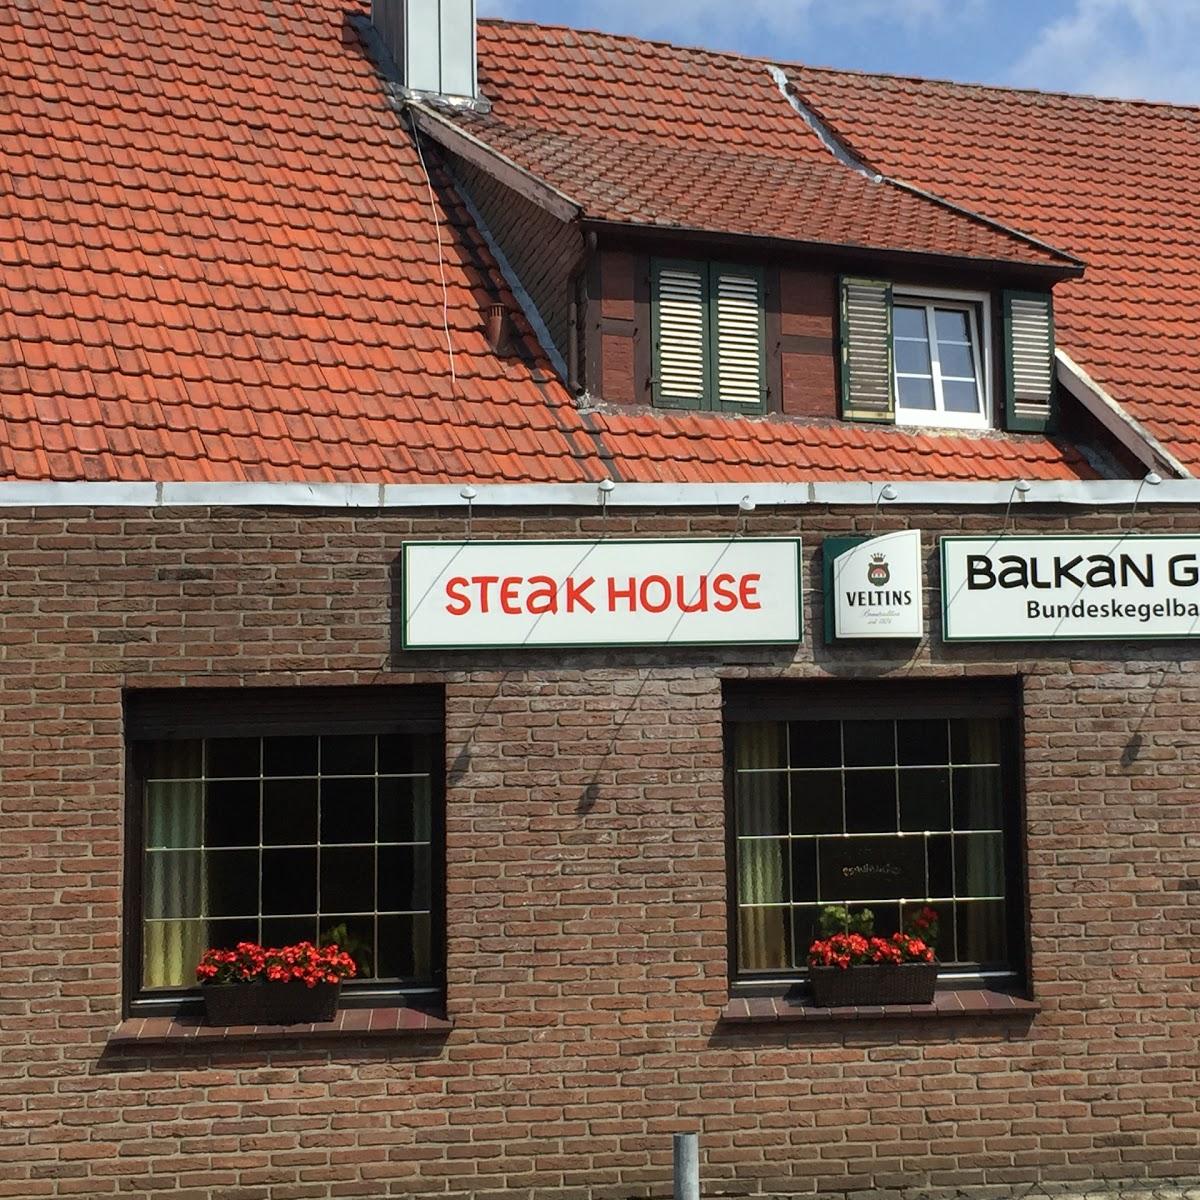 Restaurant "Steakhouse Balkan Grill" in  Quakenbrück